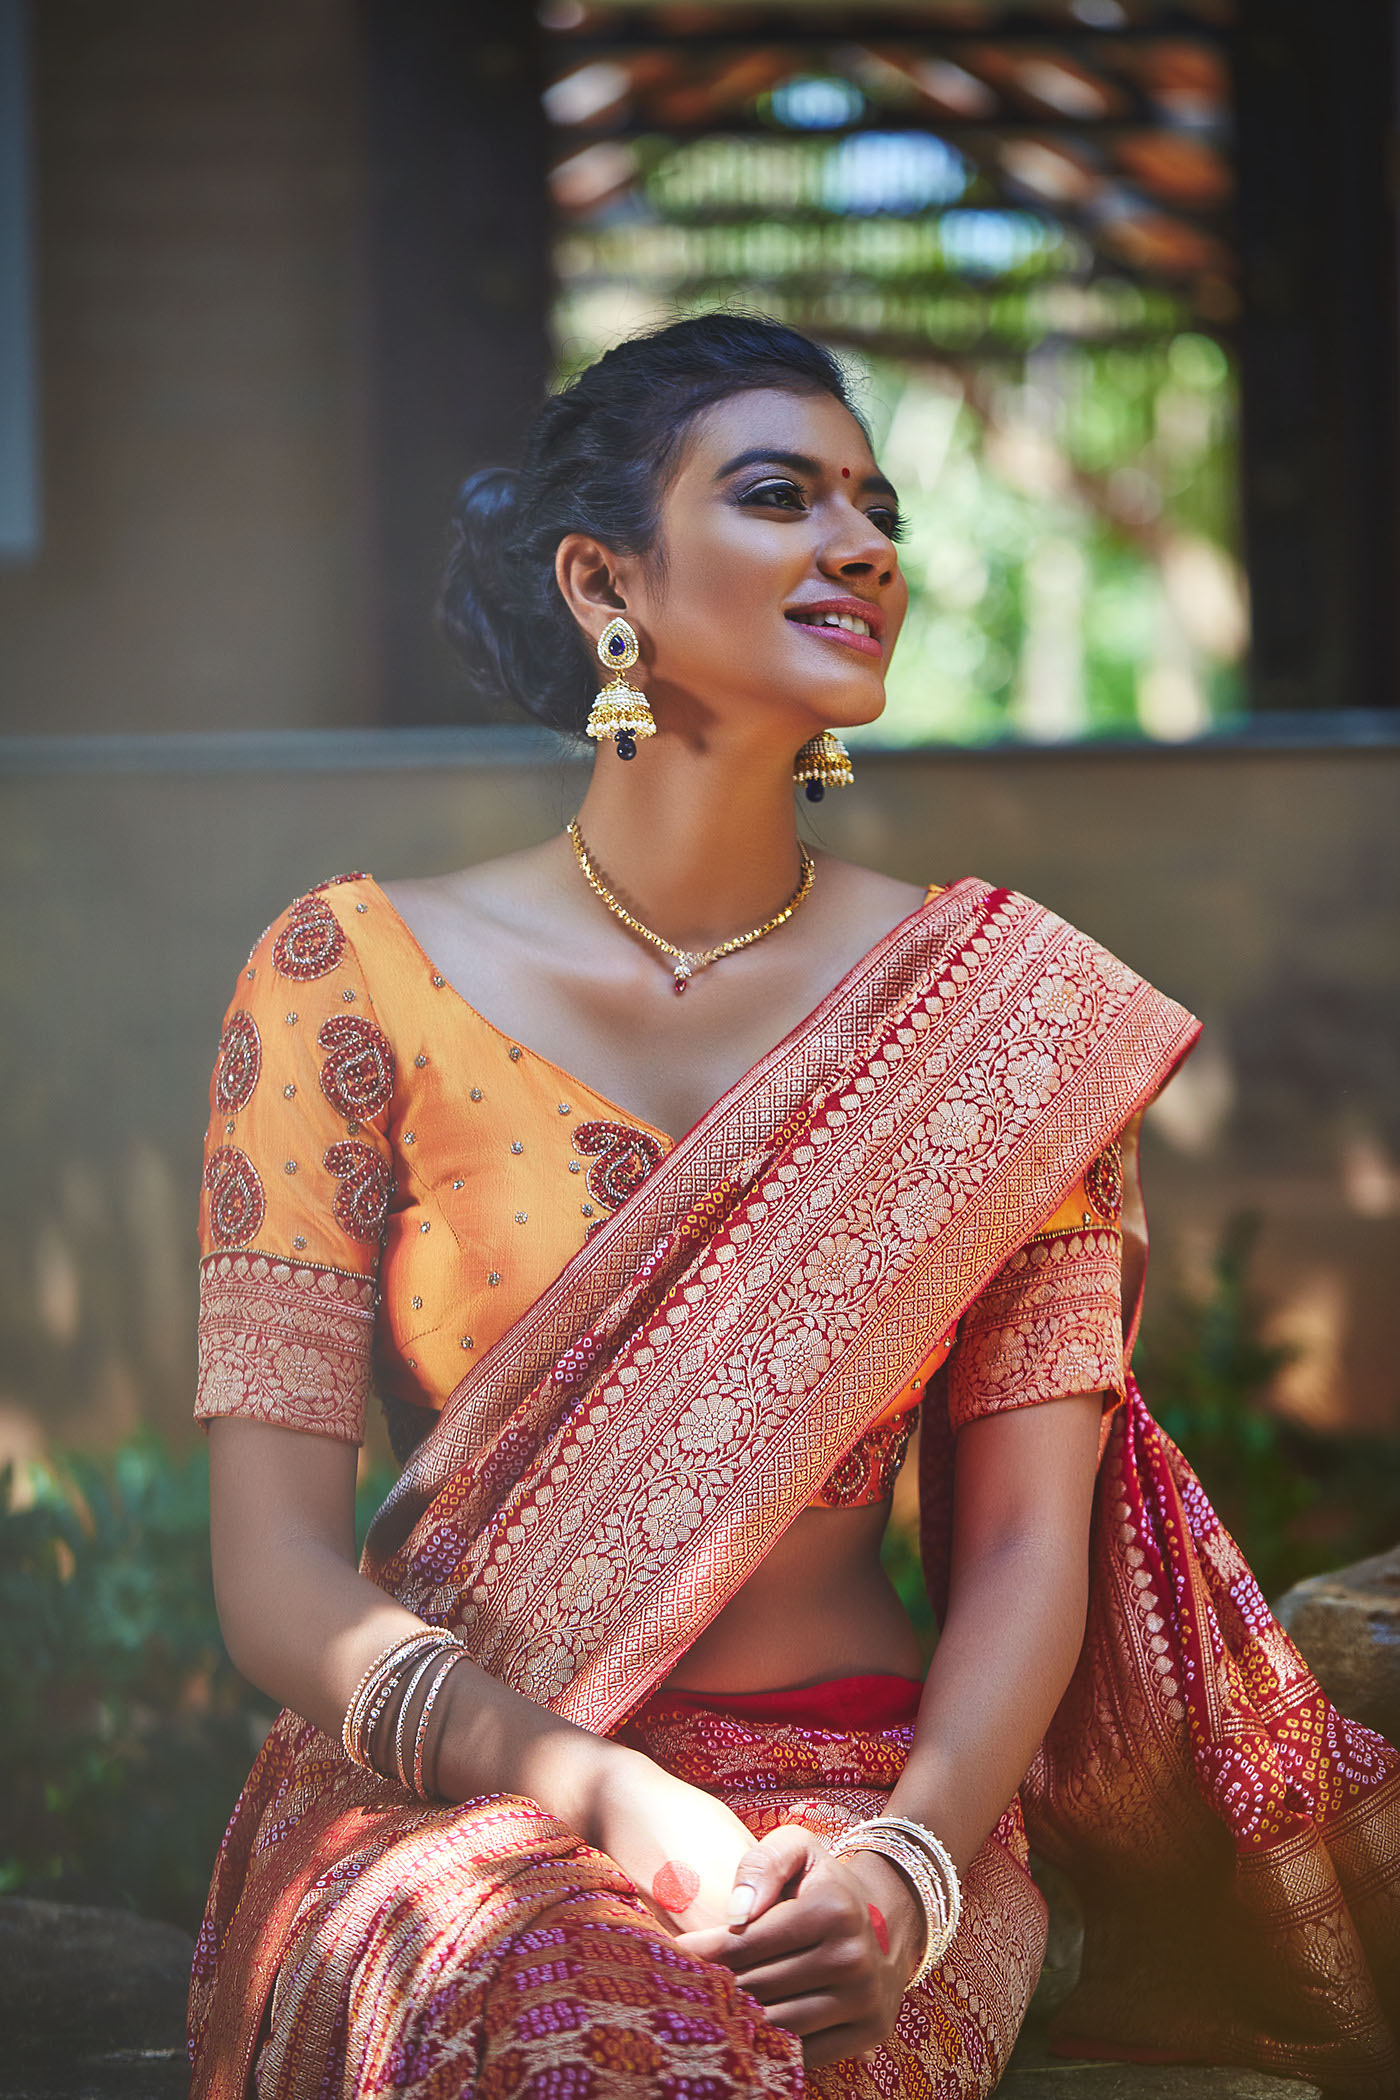 Ethnic Wear Indian wear womens wear womens styling